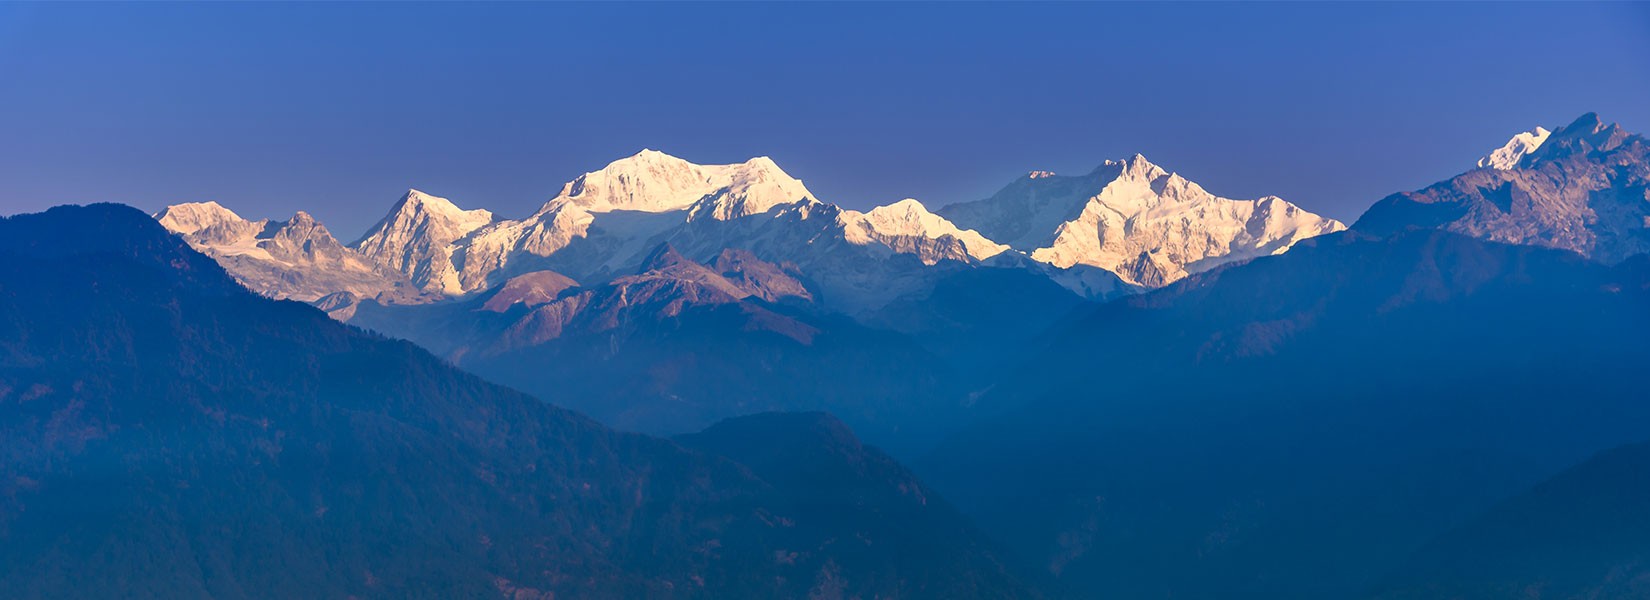 Kanchenjunga Trek in November Banner